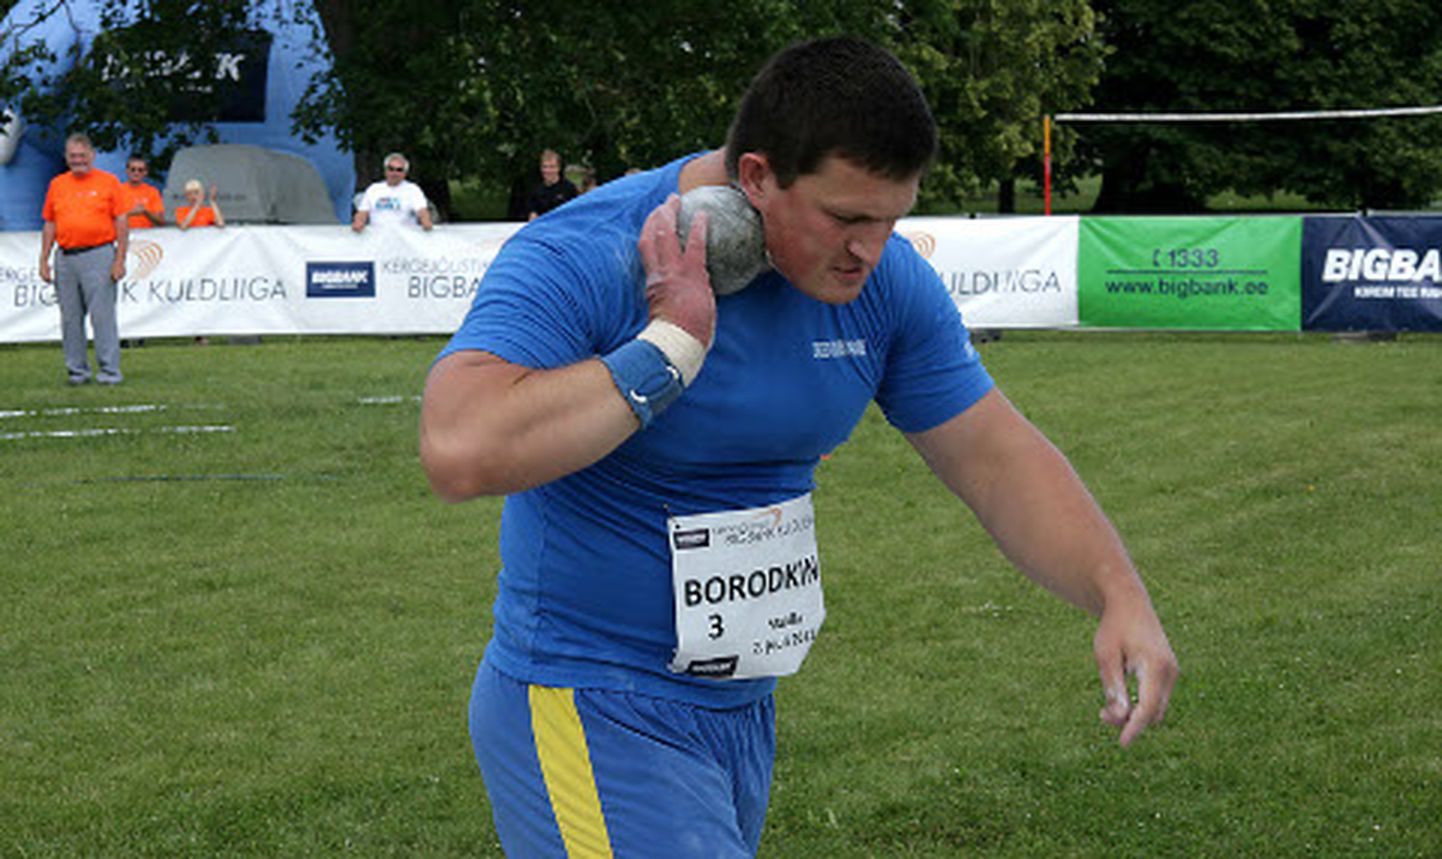 Ukrainlane Andrei Borodkin on üks viiest üle 20 meetri ulatuva isikliku rekordiga mehest, keda laupäeval Maidlas kuuli tõukamas näeb.